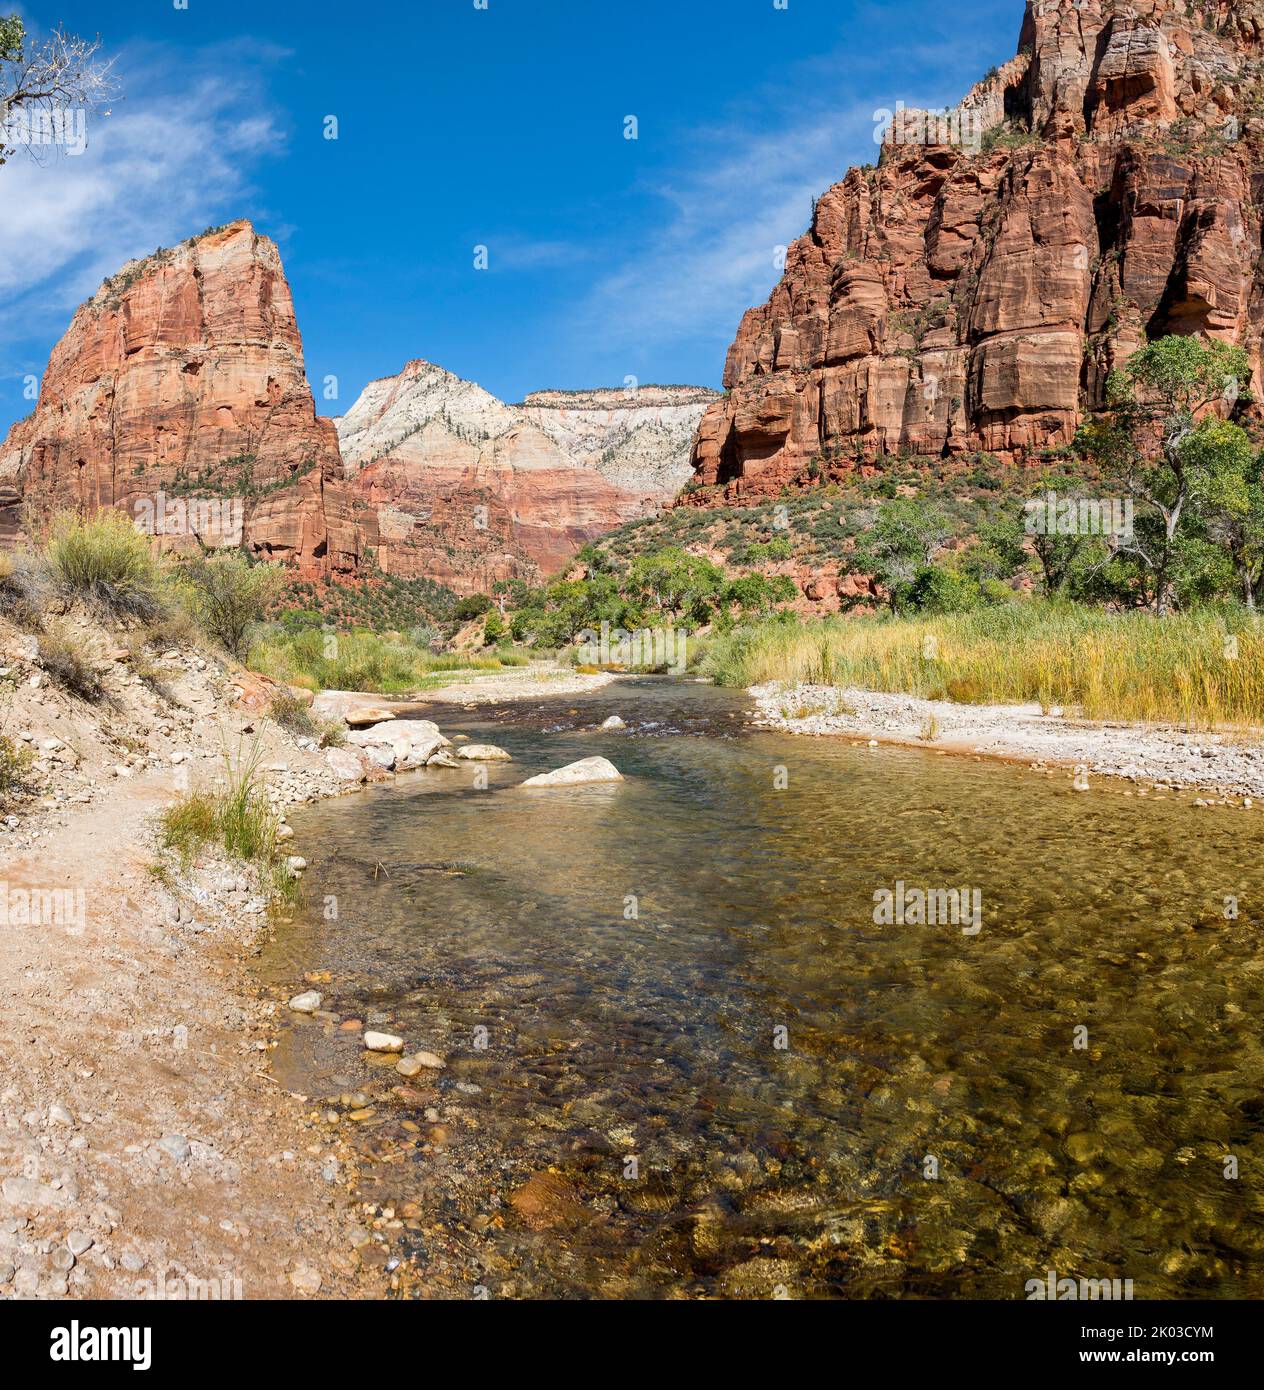 El Parque Nacional Zion está ubicado en el suroeste de Utah en la frontera con Arizona. Tiene una superficie de 579 kö² y se encuentra entre 1128 m y 2660 m de altitud. Paisaje en el Cañón Zion en el West Rim Trail. Vista del valle de Angels Landing. Foto de stock